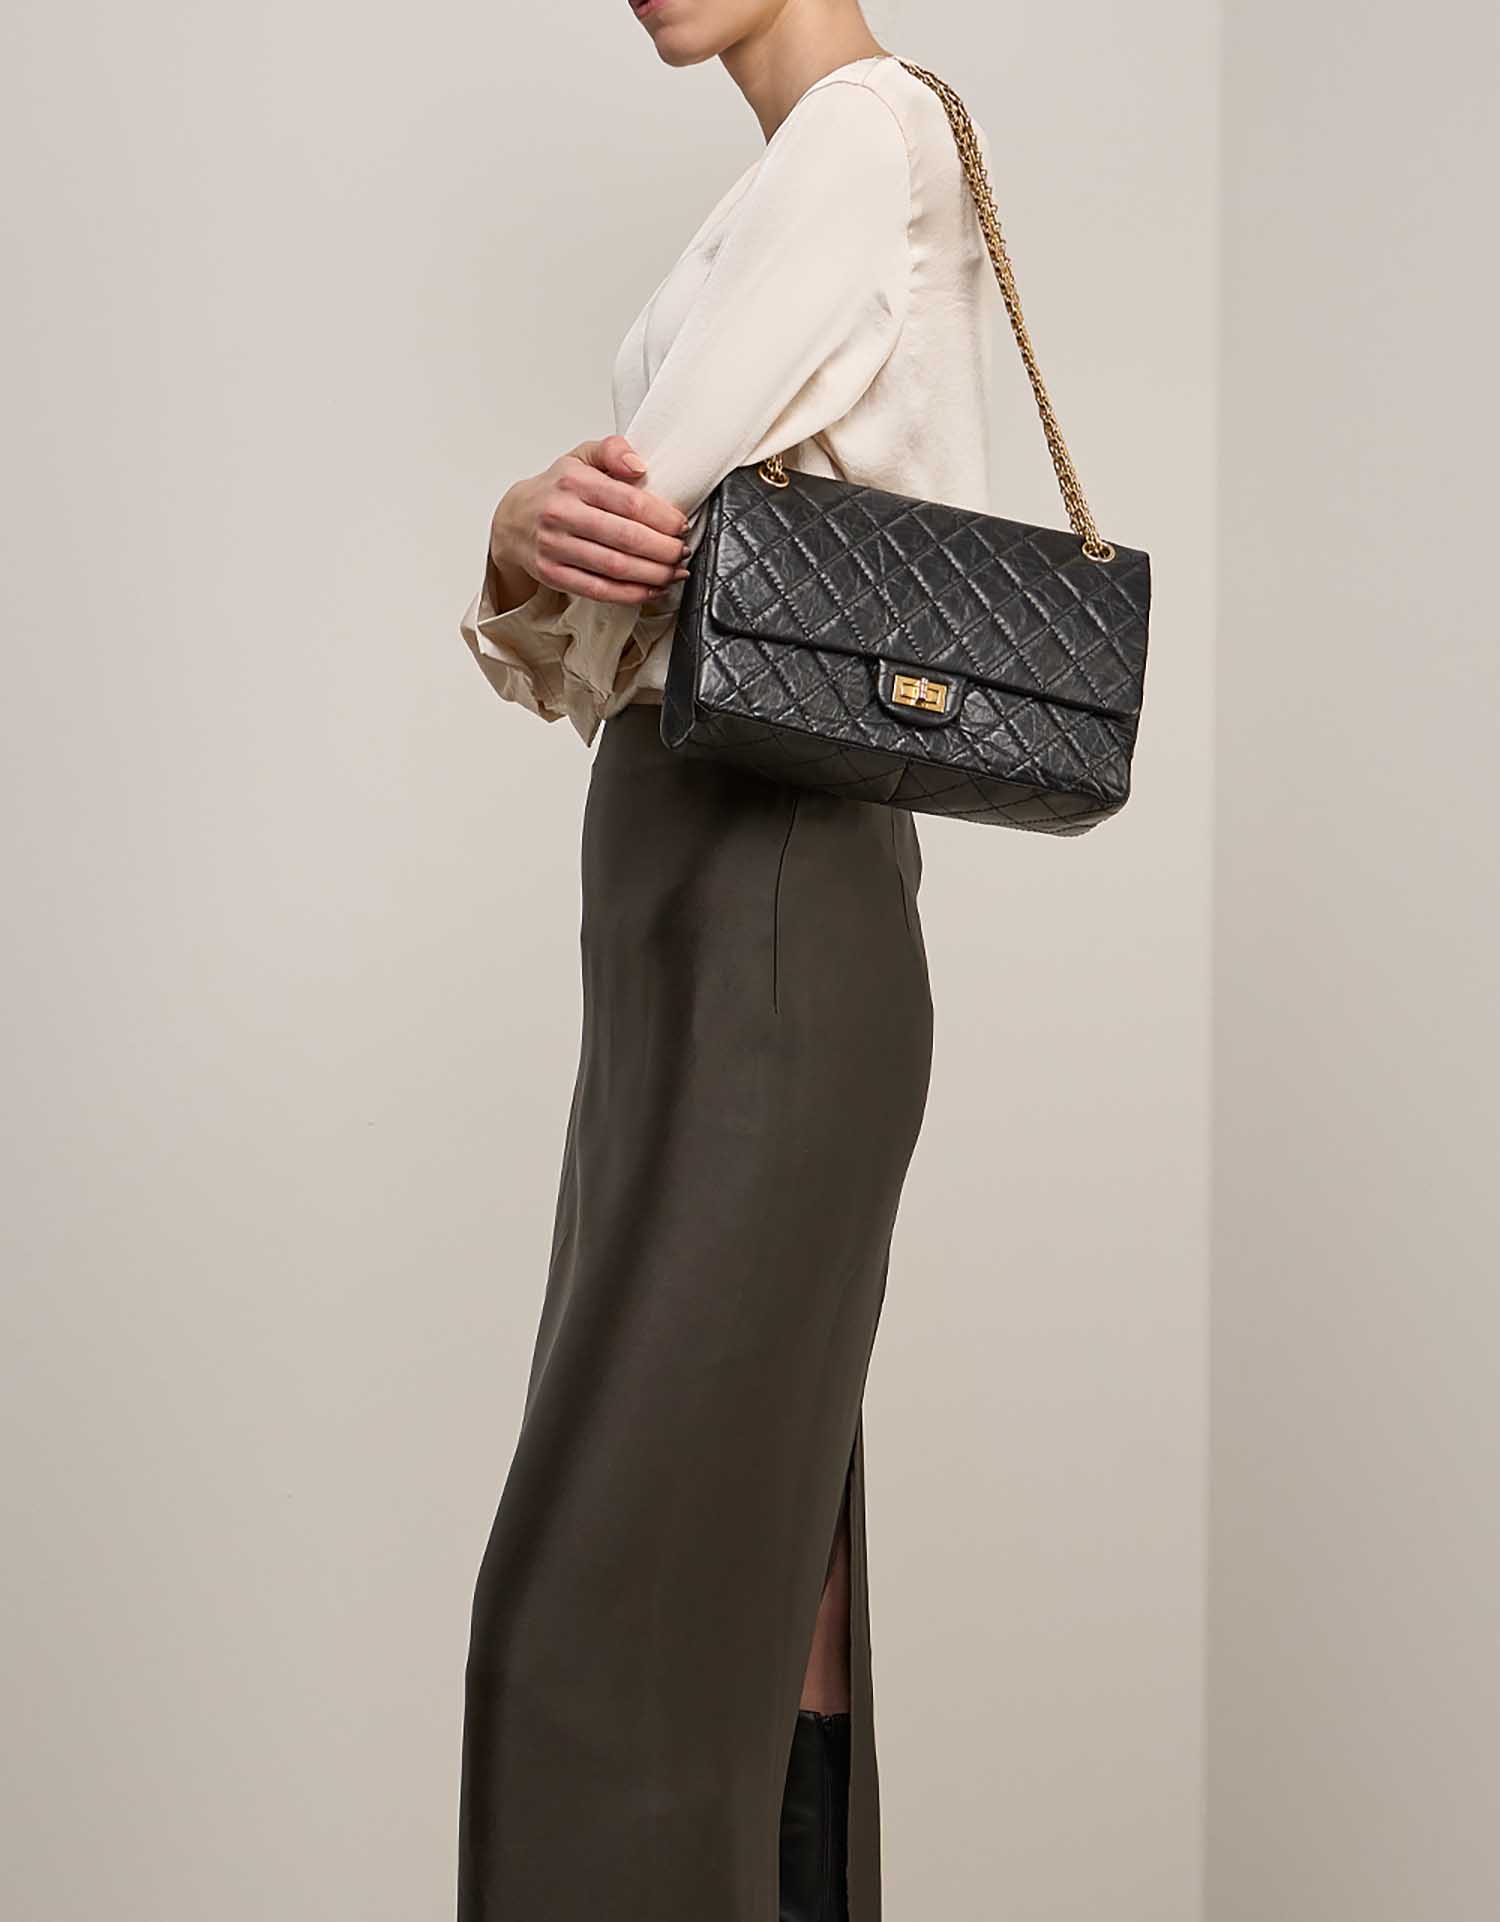 Chanel 255 226 Black on Model | Sell your designer bag on Saclab.com